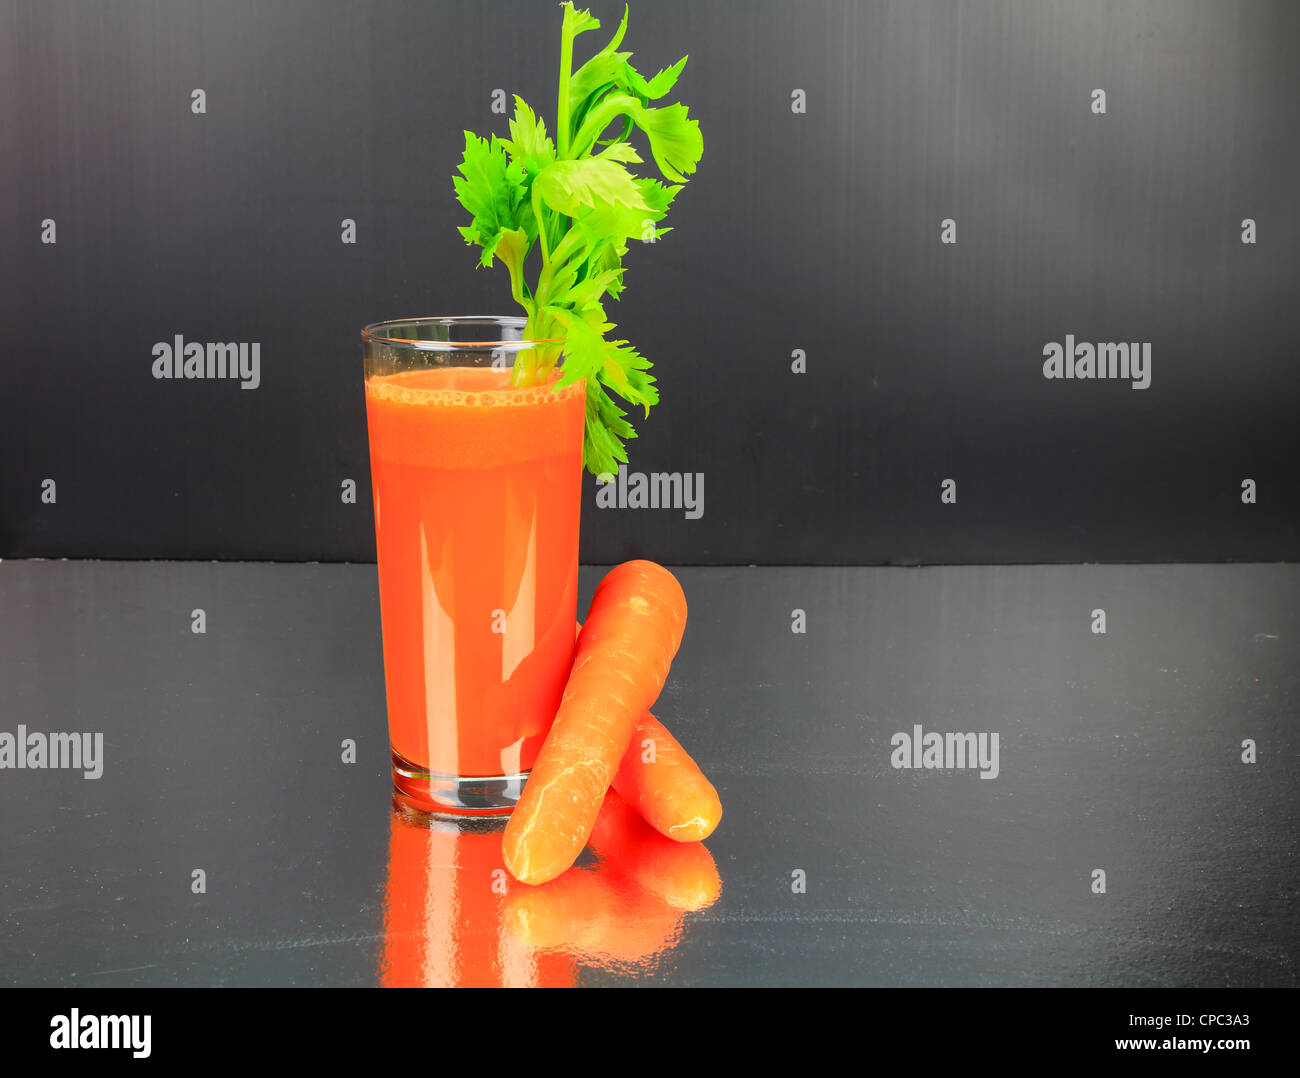 Jus de carottes avec le céleri dans un verre sur un banc en acier inoxydable haut Banque D'Images